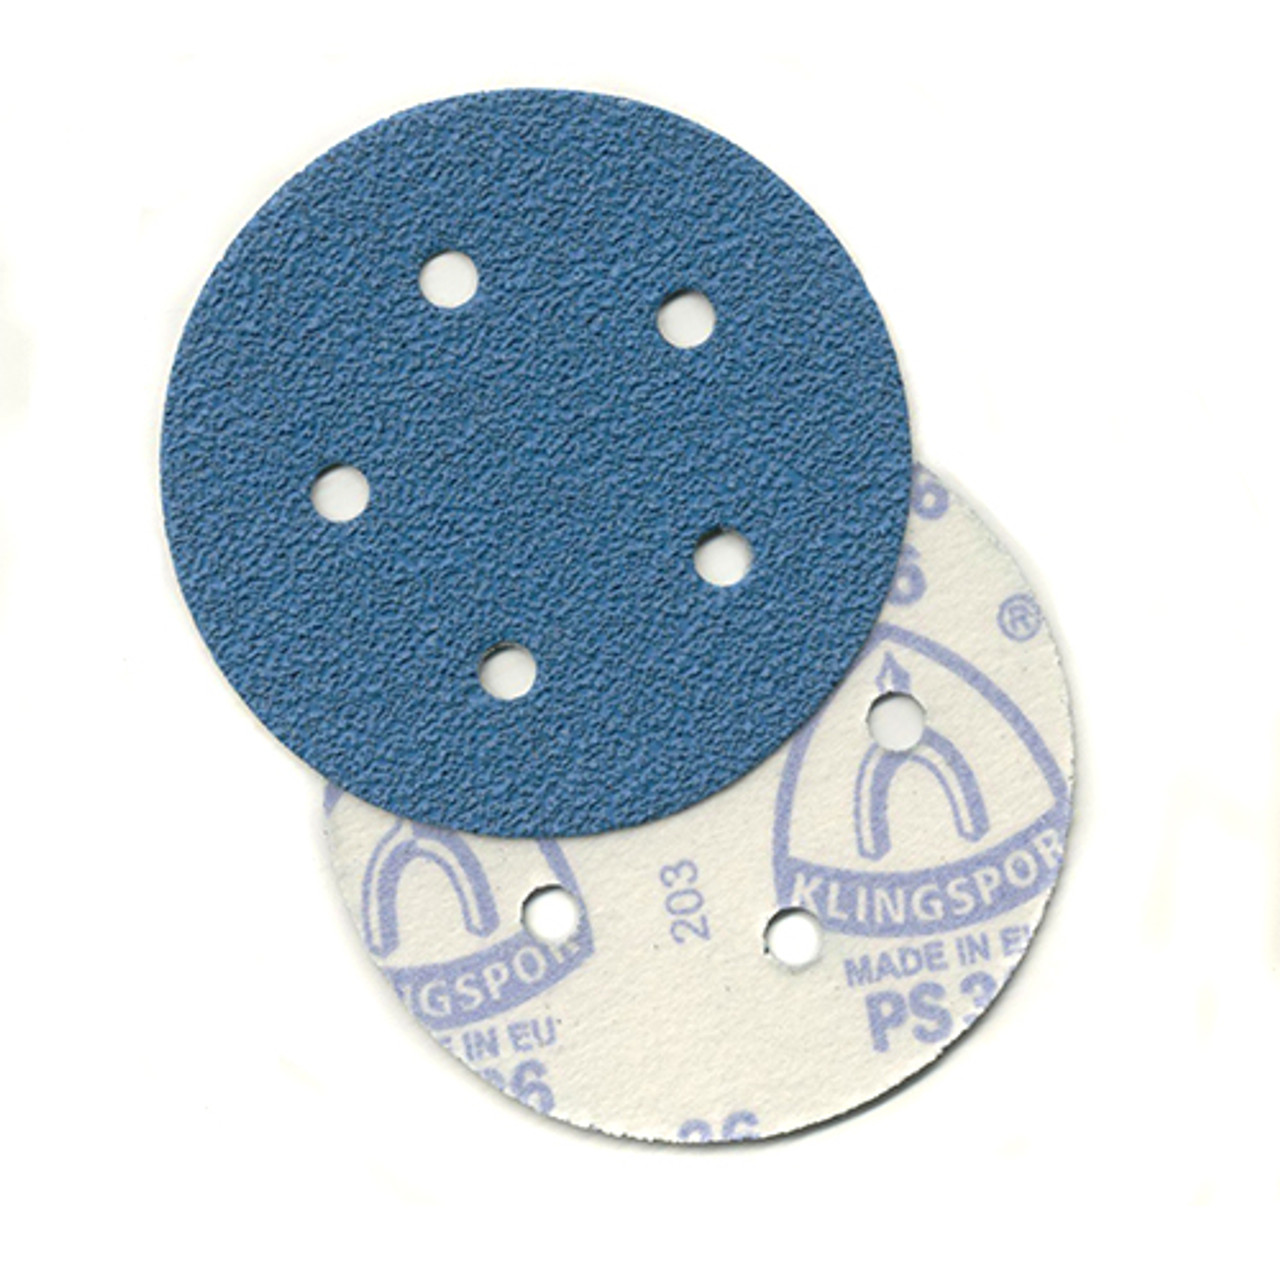 Klingspor Abrasives AZ-Plus Alumina Zirconia, 5"x 5 Hole, Hook & Loop, 80 Grit Discs, 50pk